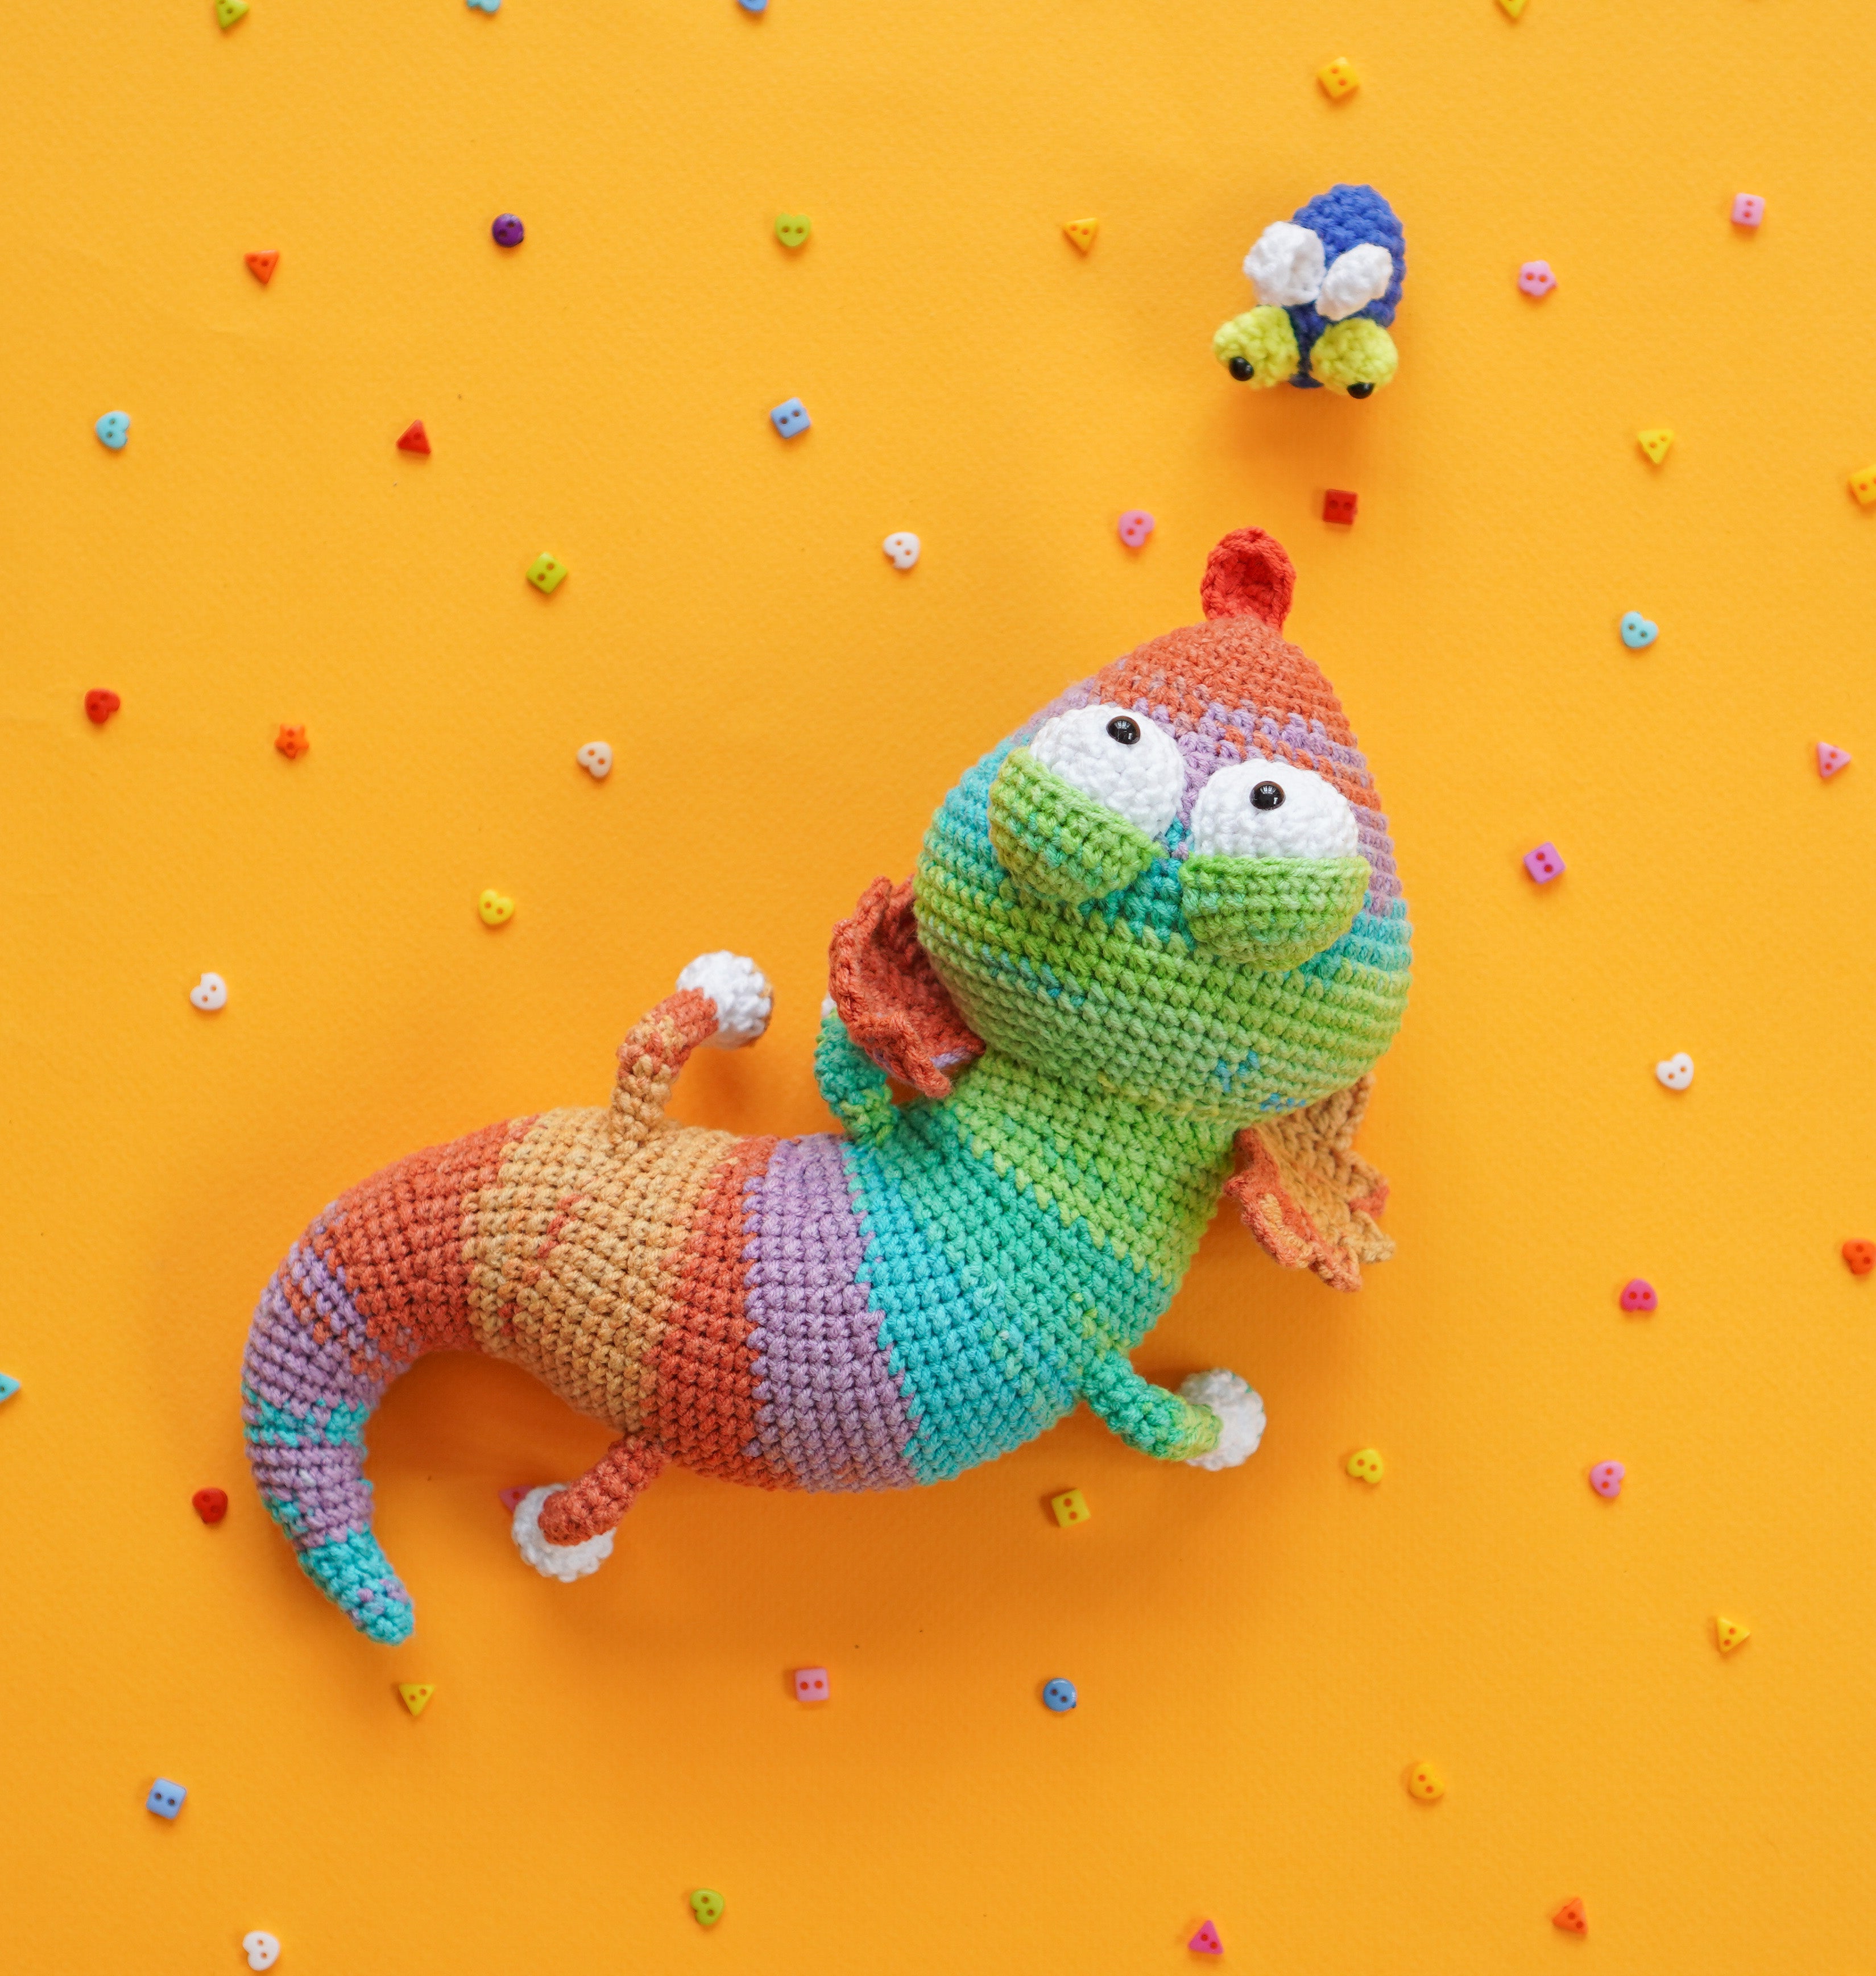 Geeky The Leopard Gecko Crochet Pattern by Aquariwool (Crochet Doll Pattern/Amigurumi Pattern for Baby gift)